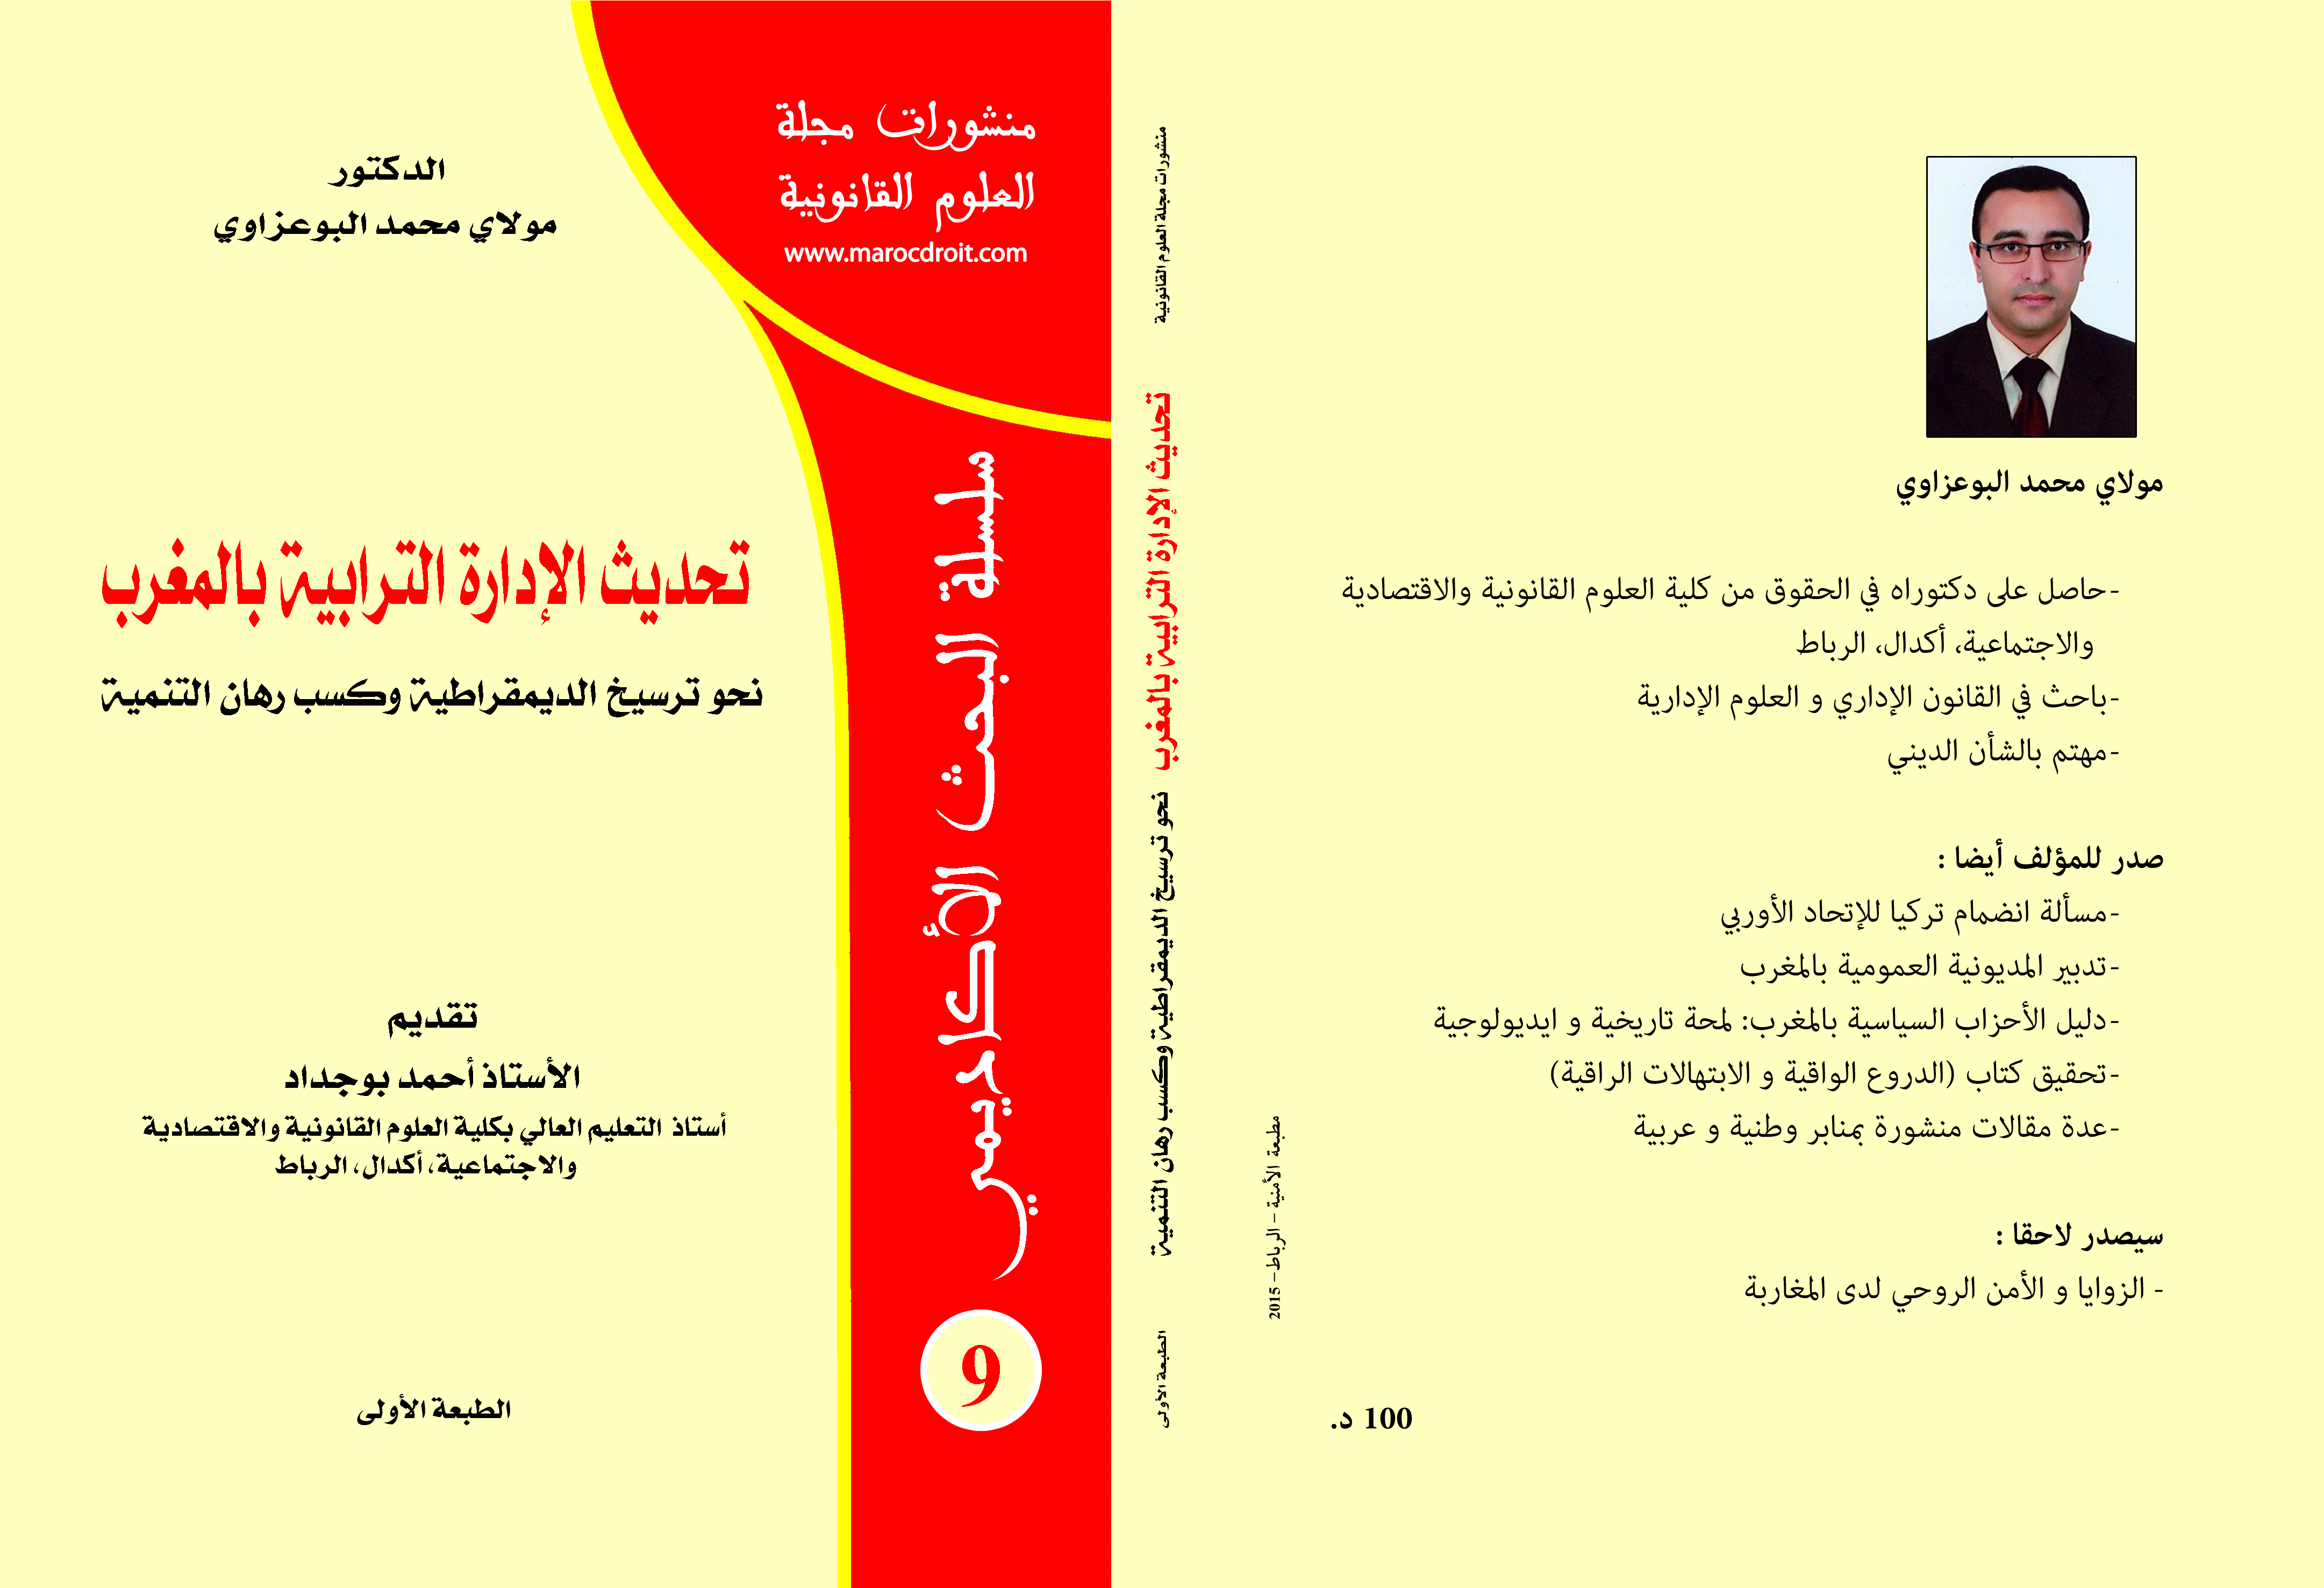 سلسلة البحث الأكاديمي(9): تحديث الإدارة الترابية بالمغرب للدكتور مولاي محمد البوعزاوي تقديم د/أحمد بوجداد 